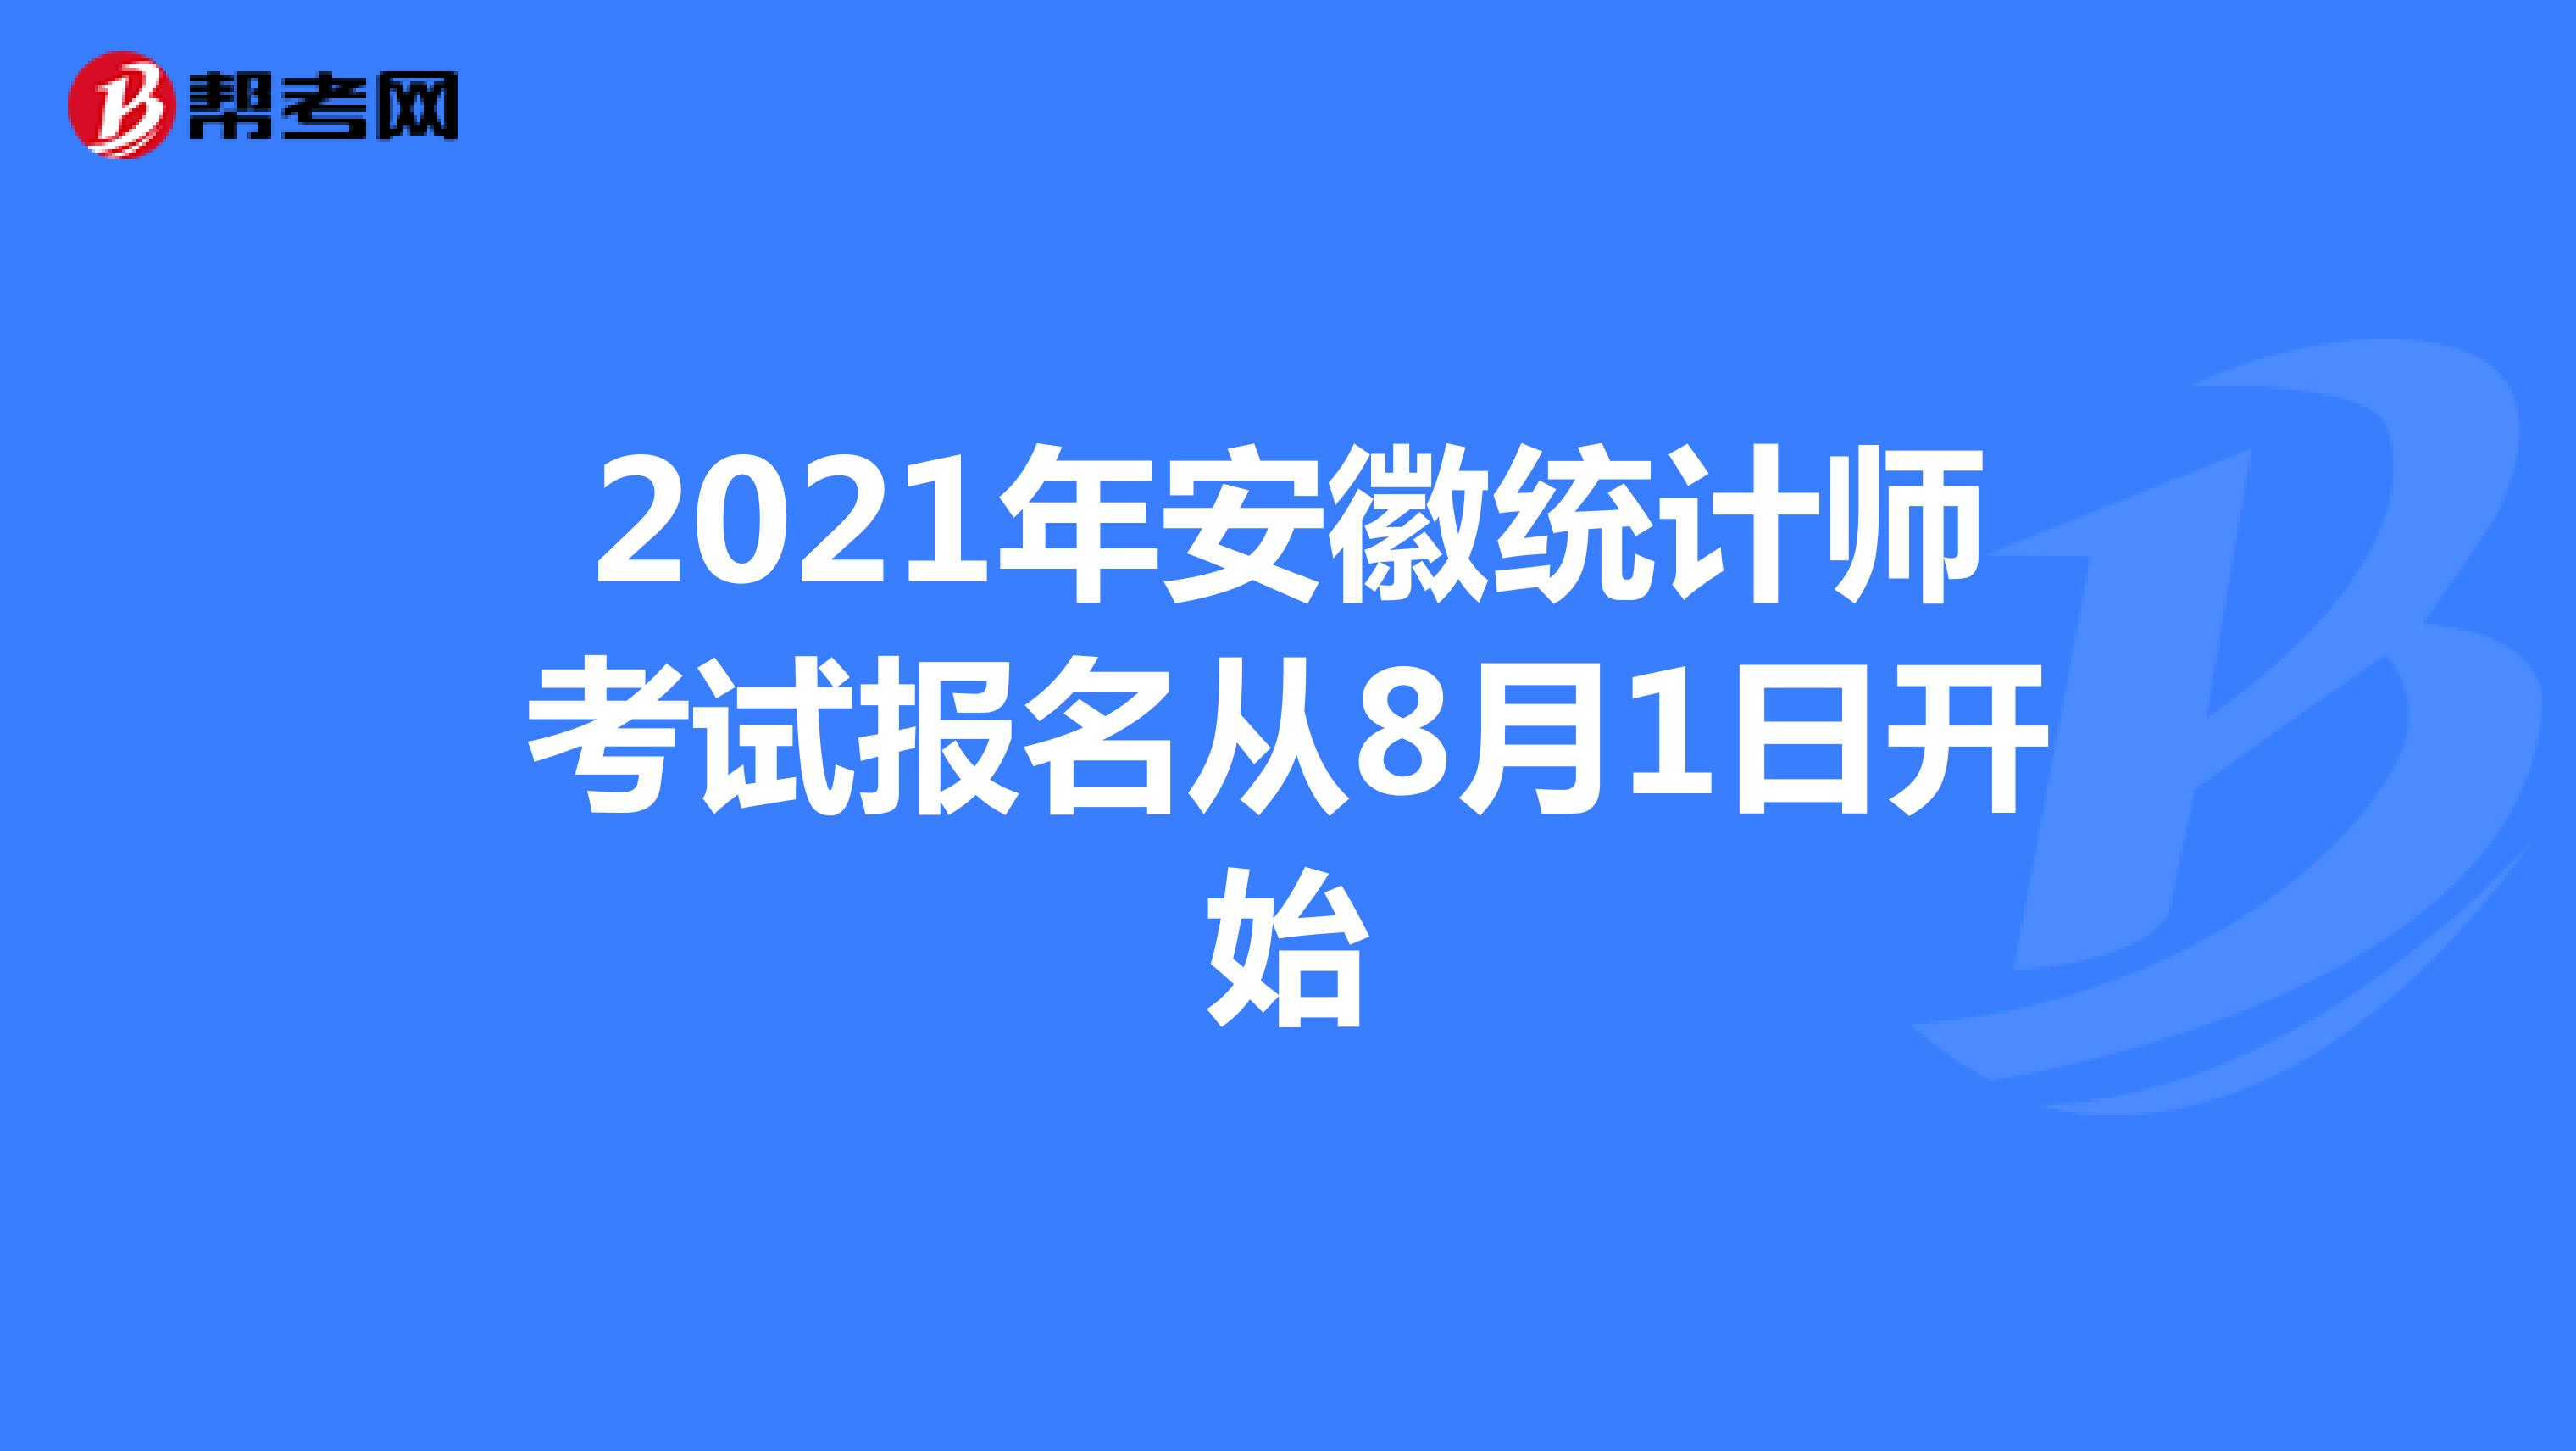 2021年安徽统计师考试报名从8月1日开始